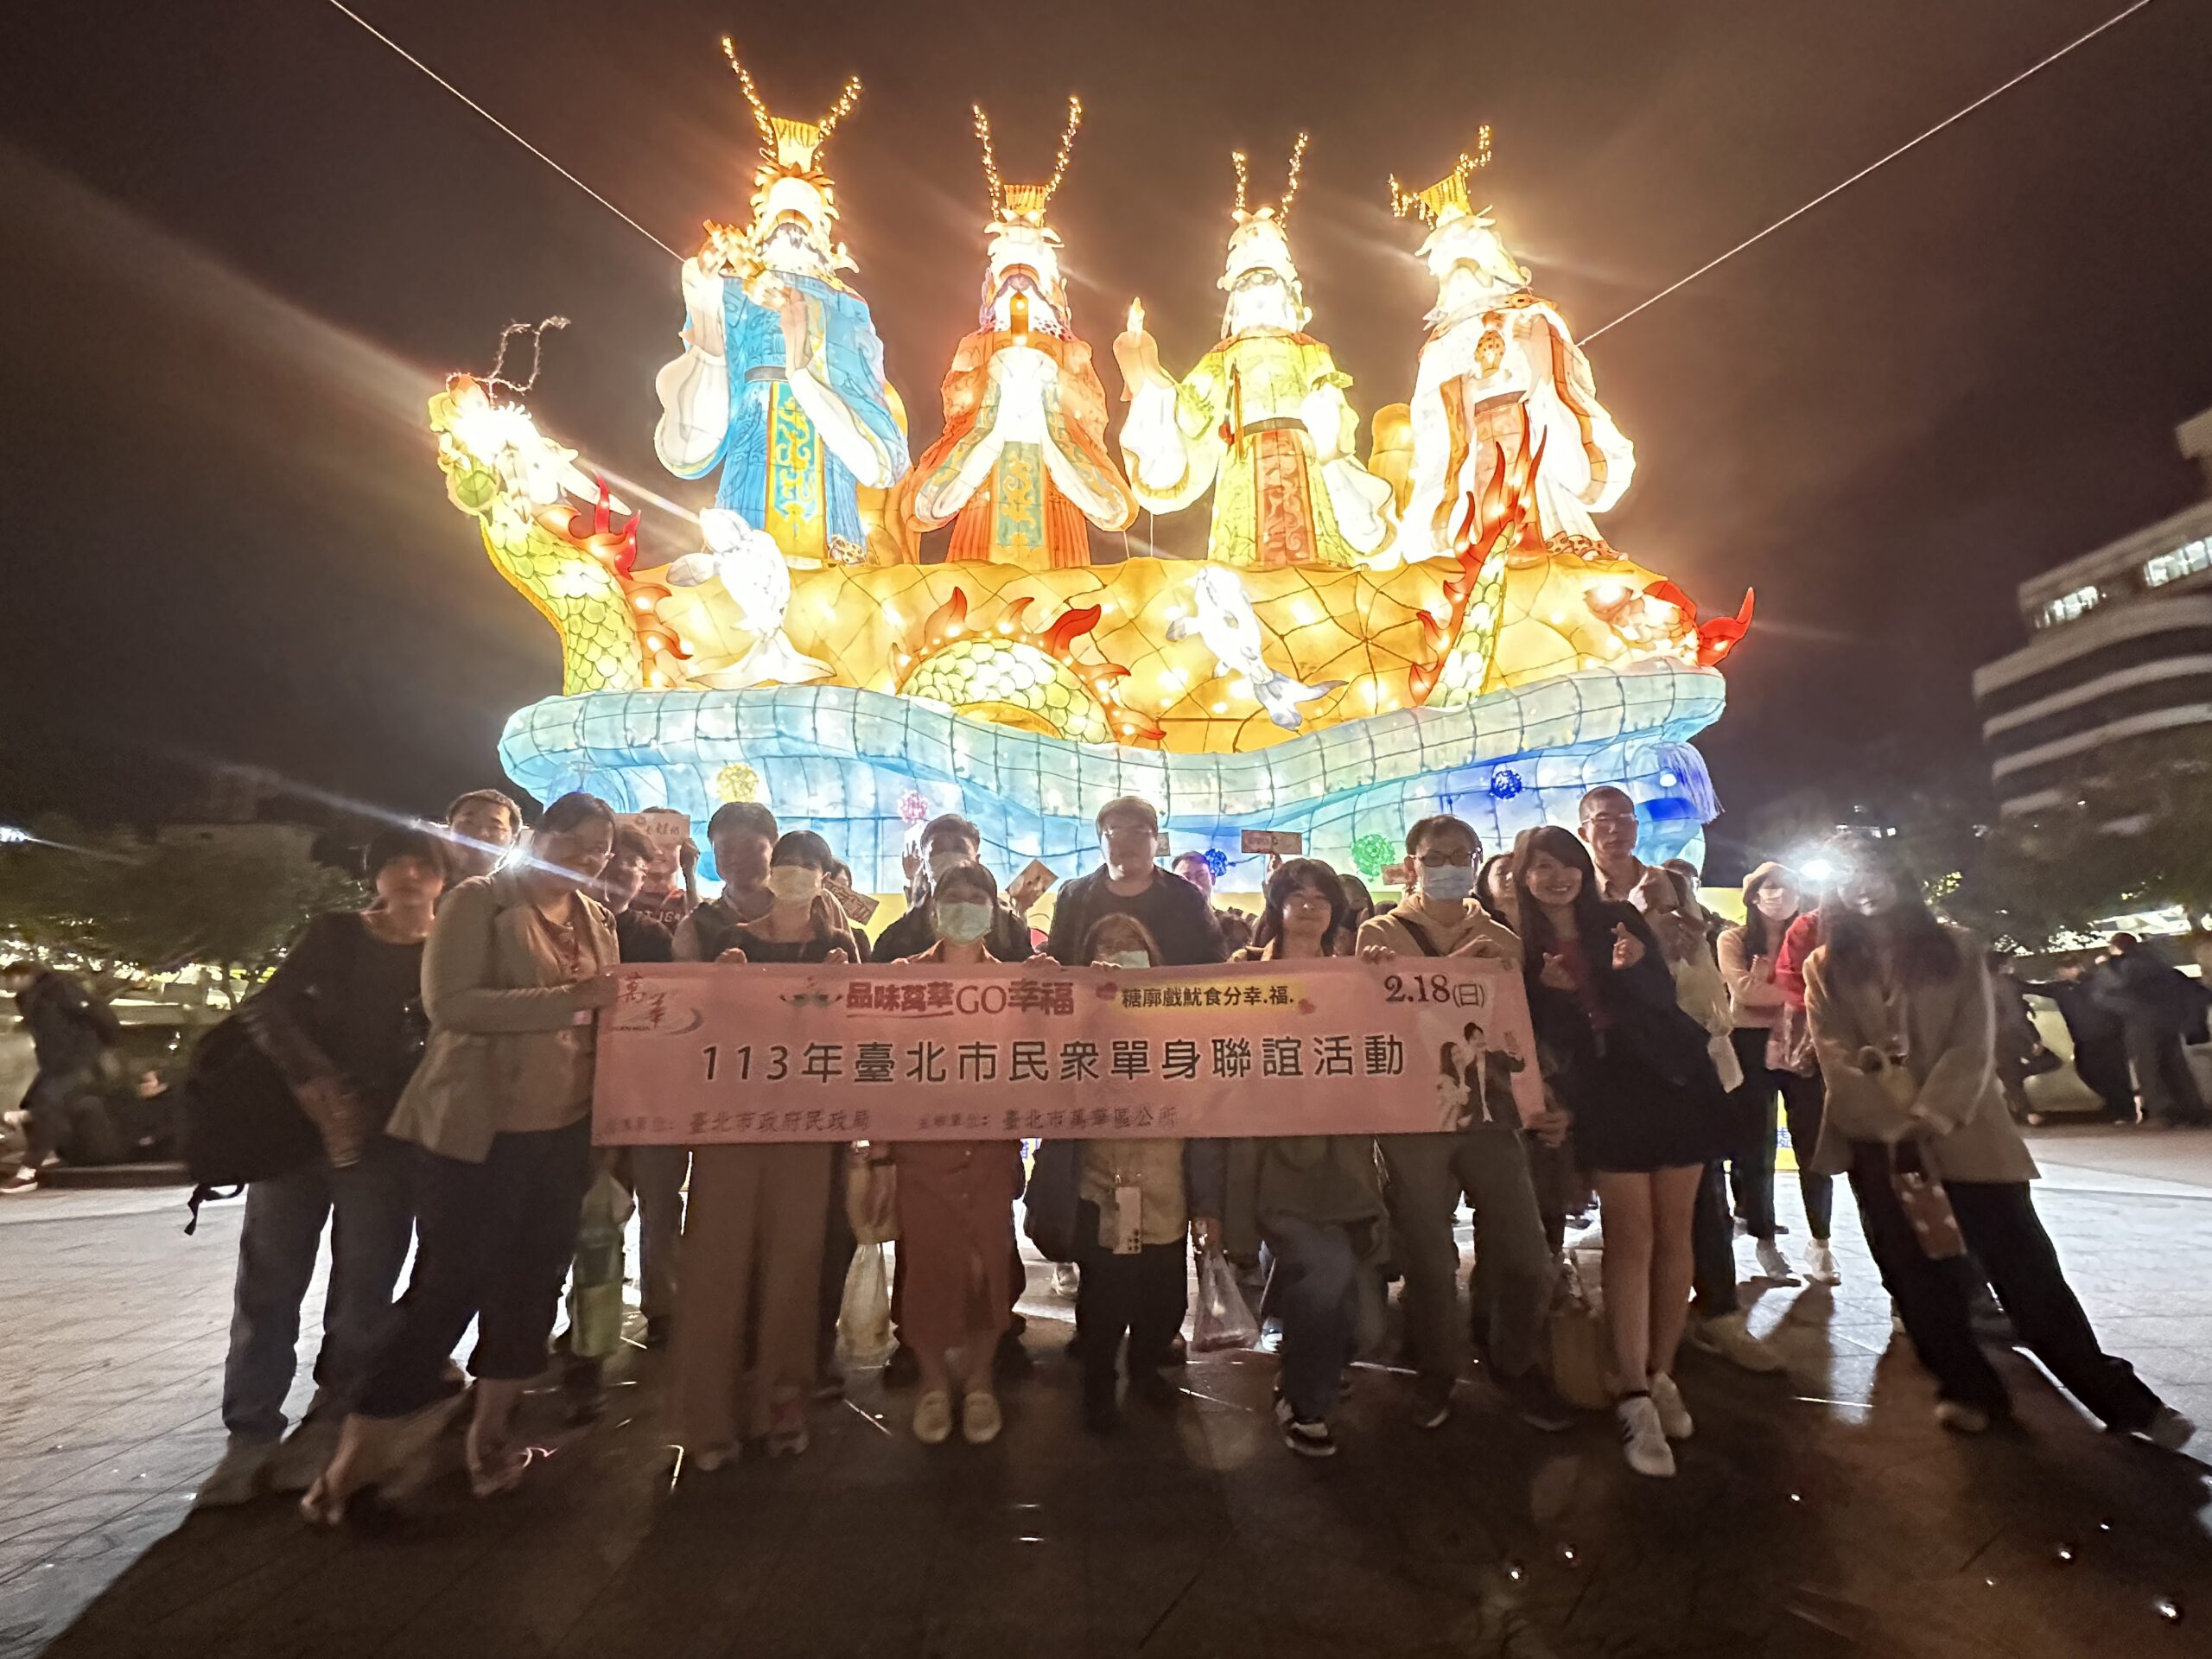 萬華區公所單身聯誼活動結合元宵燈會進行。(圖/萬華區公所提供)